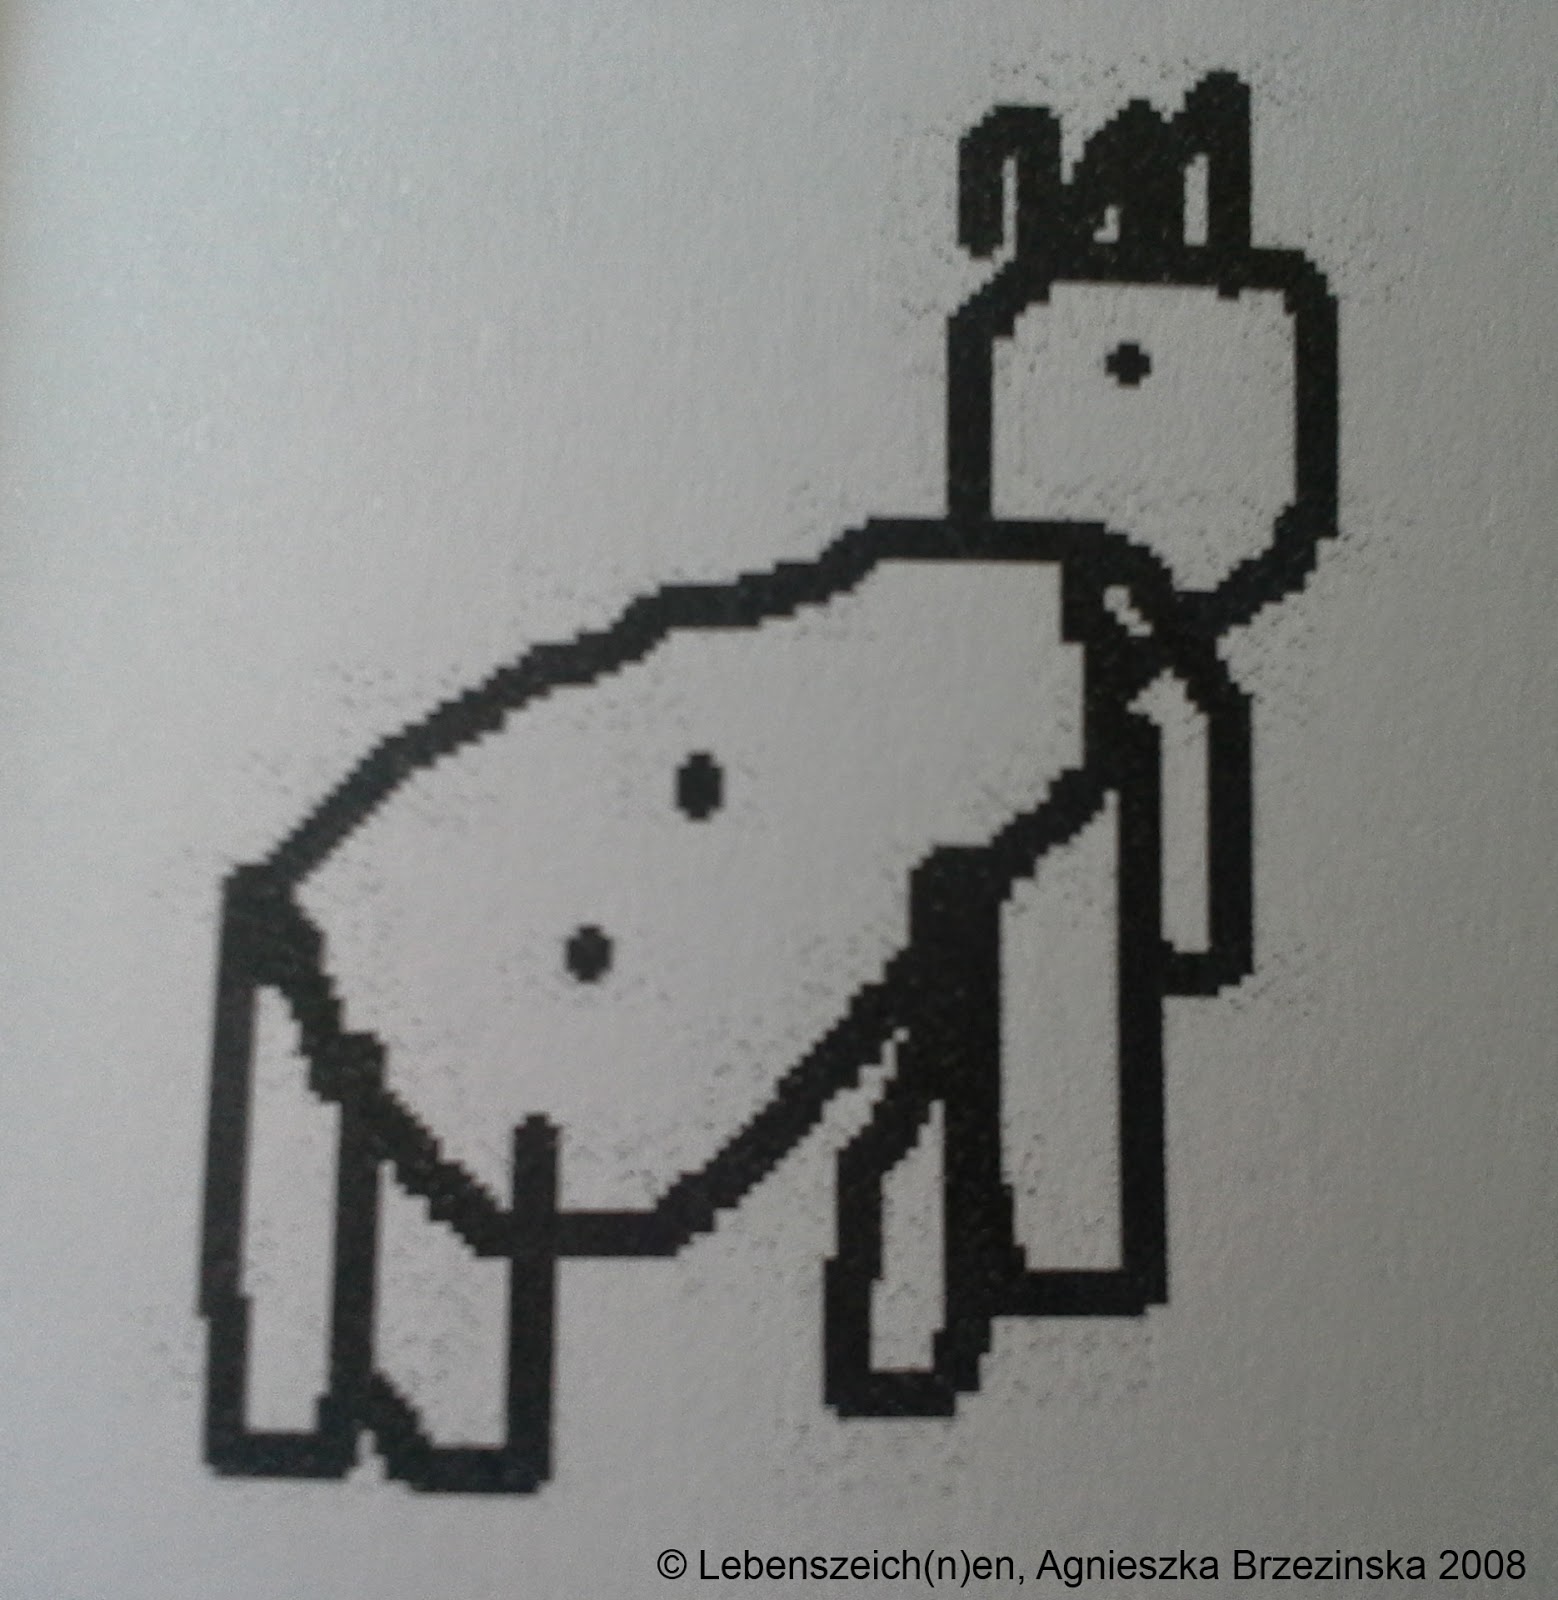 Lebenszeichnen, Kindermalbuch von Agnieszka Brzezinska, Beispiel einer Zeichnung